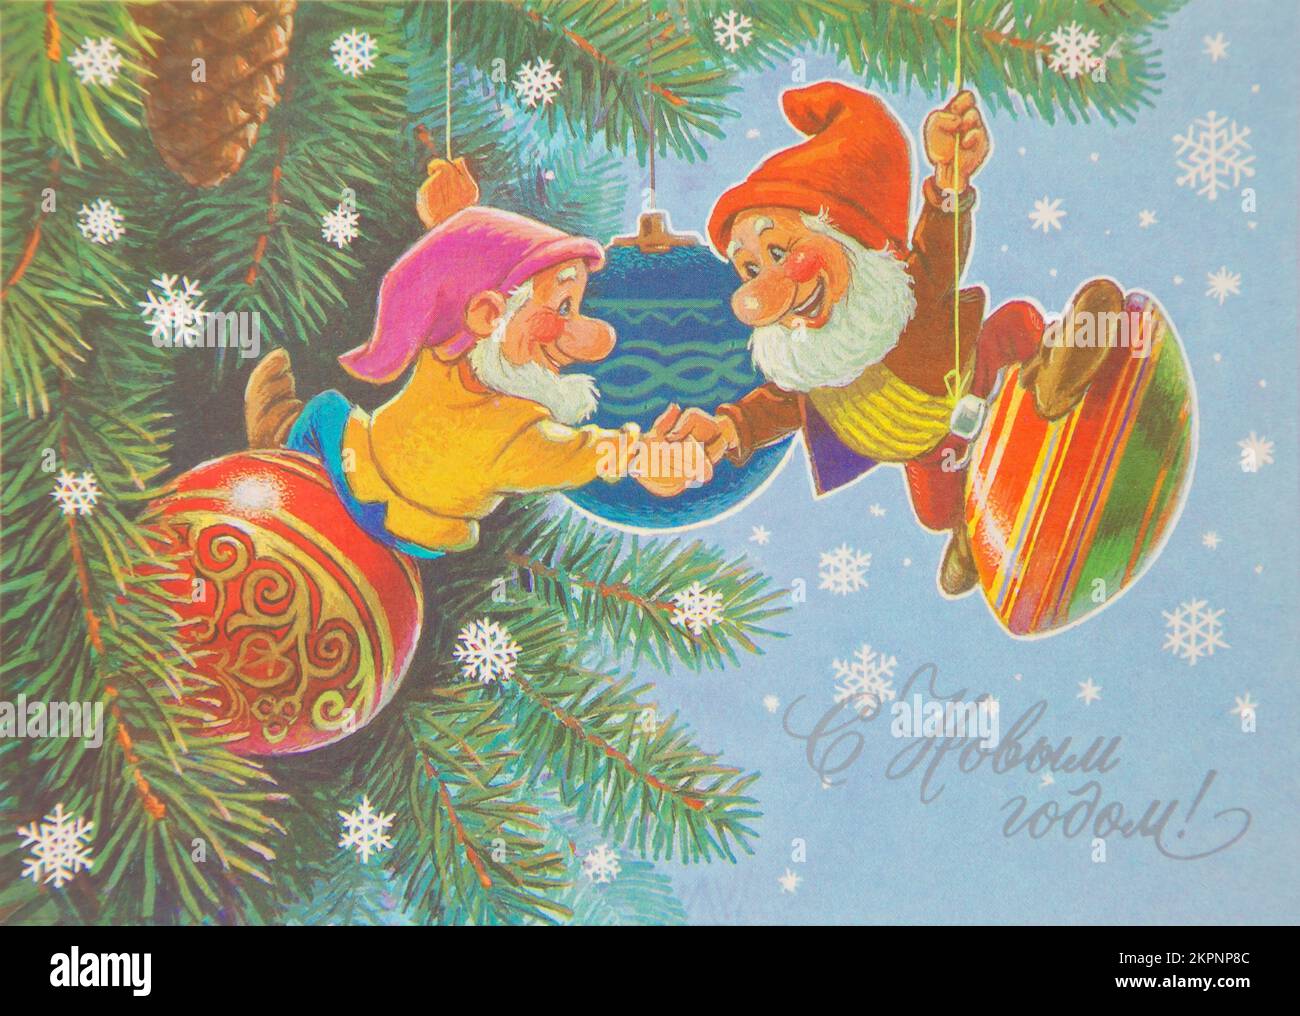 UdSSR-CIRCA 1990: Reproduktion antiker Postkarten zeigt zwei Gnomen und Weihnachtsbälle auf dem Weihnachtsbaum: Russischer Text: Happy New Year: Painter V. Stockfoto